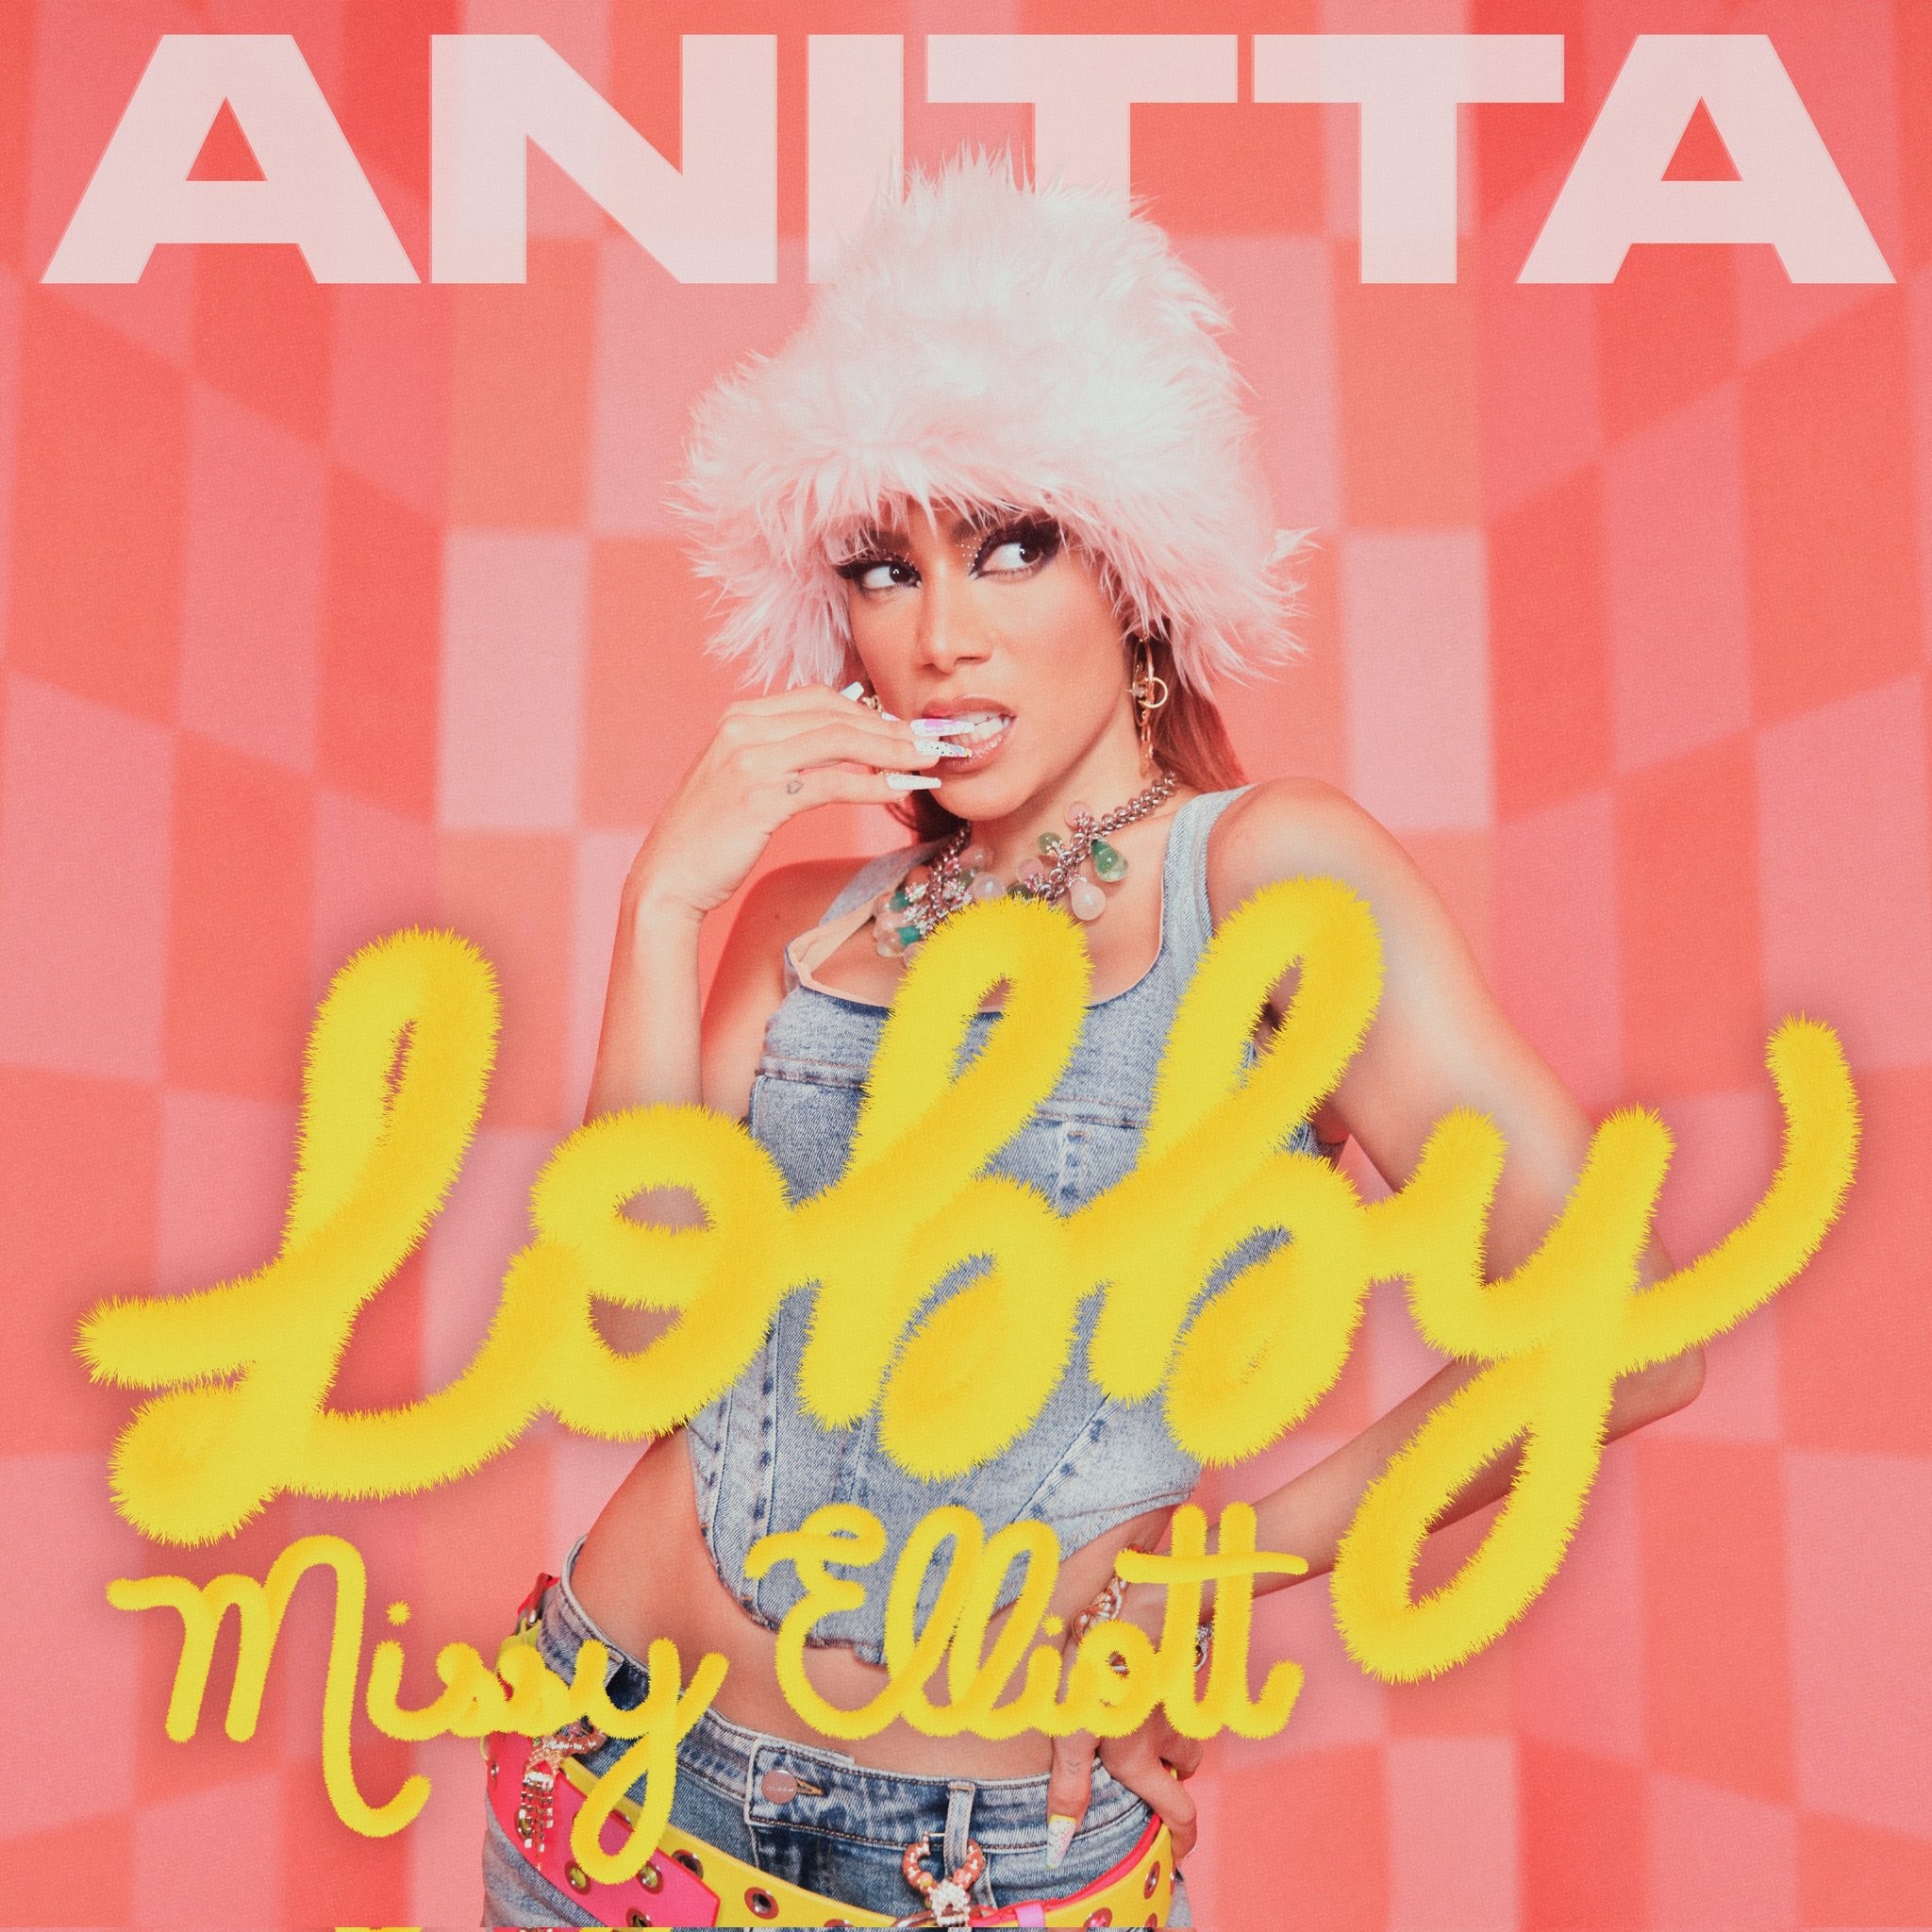 Anitta faz convite ao prazer no mix de pop e rap que gera 'Lobby', single com Missy Elliott